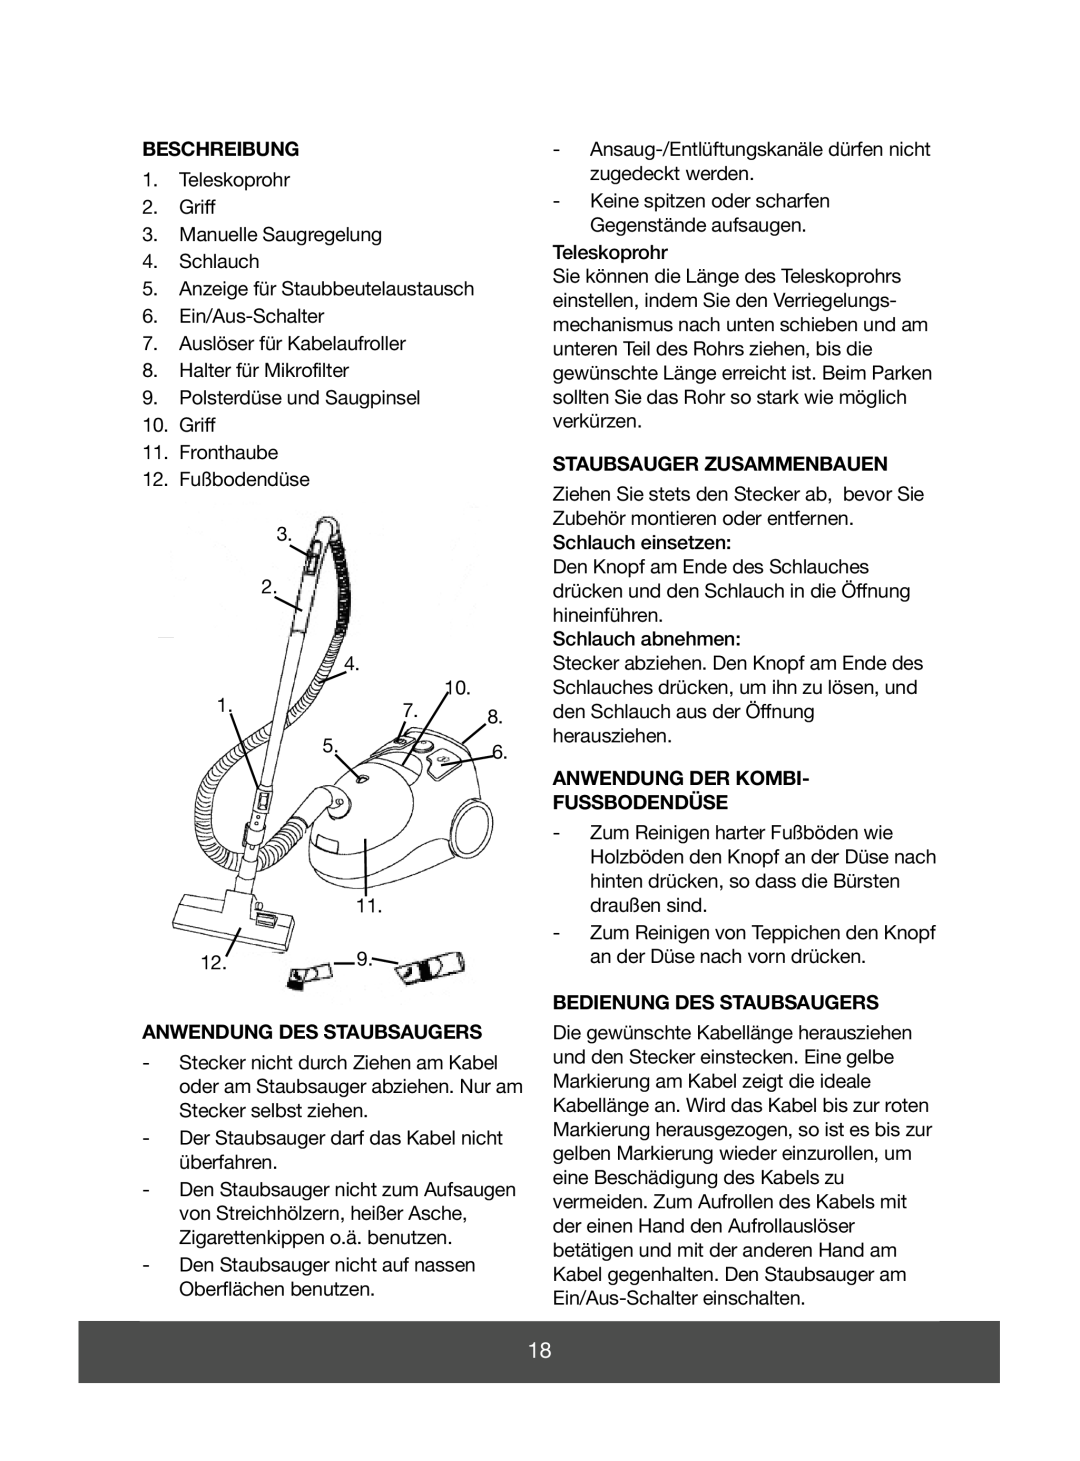 Melissa 640-055 Beschreibung, Anwendung Des Staubsaugers, Staubsauger Zusammenbauen, Anwendung Der Kombi Fussbodendüse 